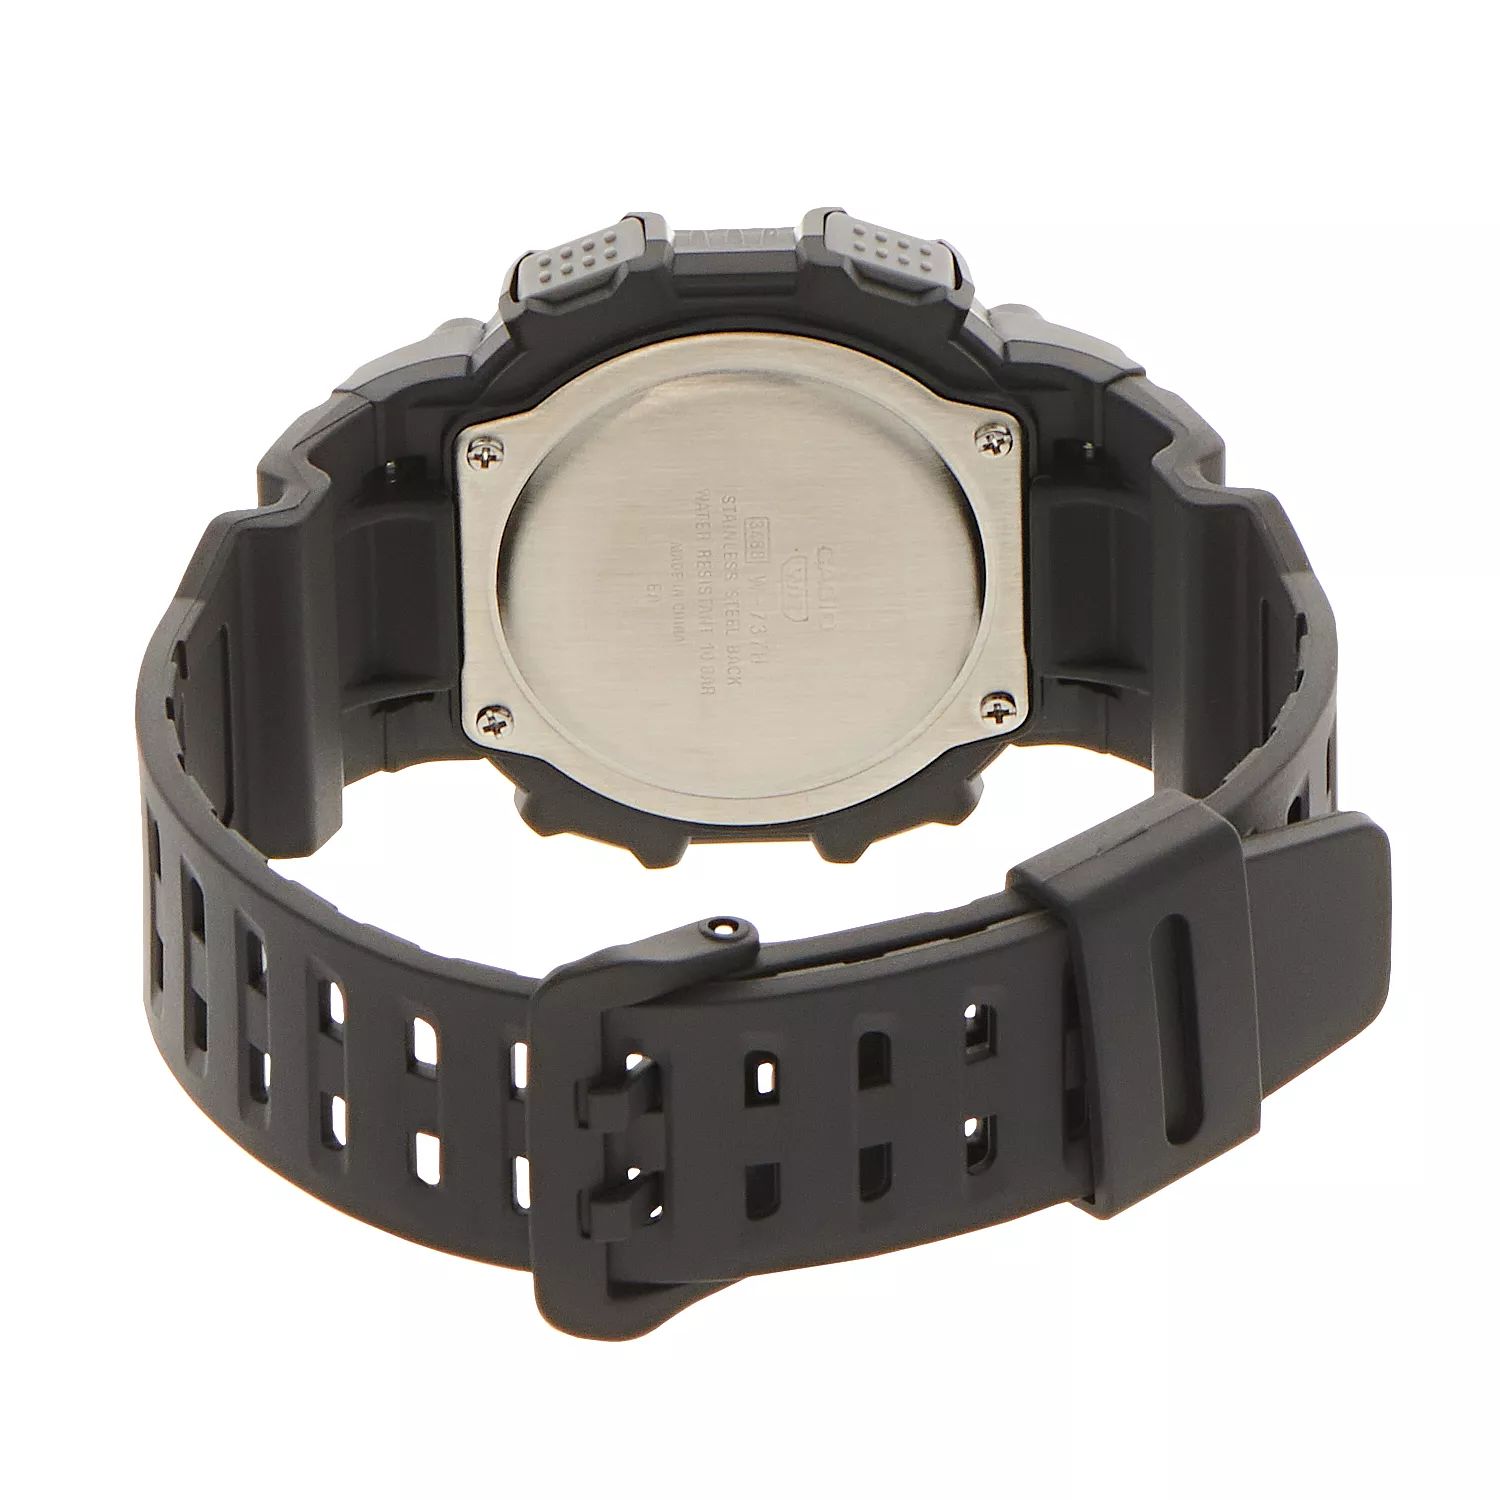 Мужские часы с цифровым хронографом - W737HX-1AV Casio цена и фото